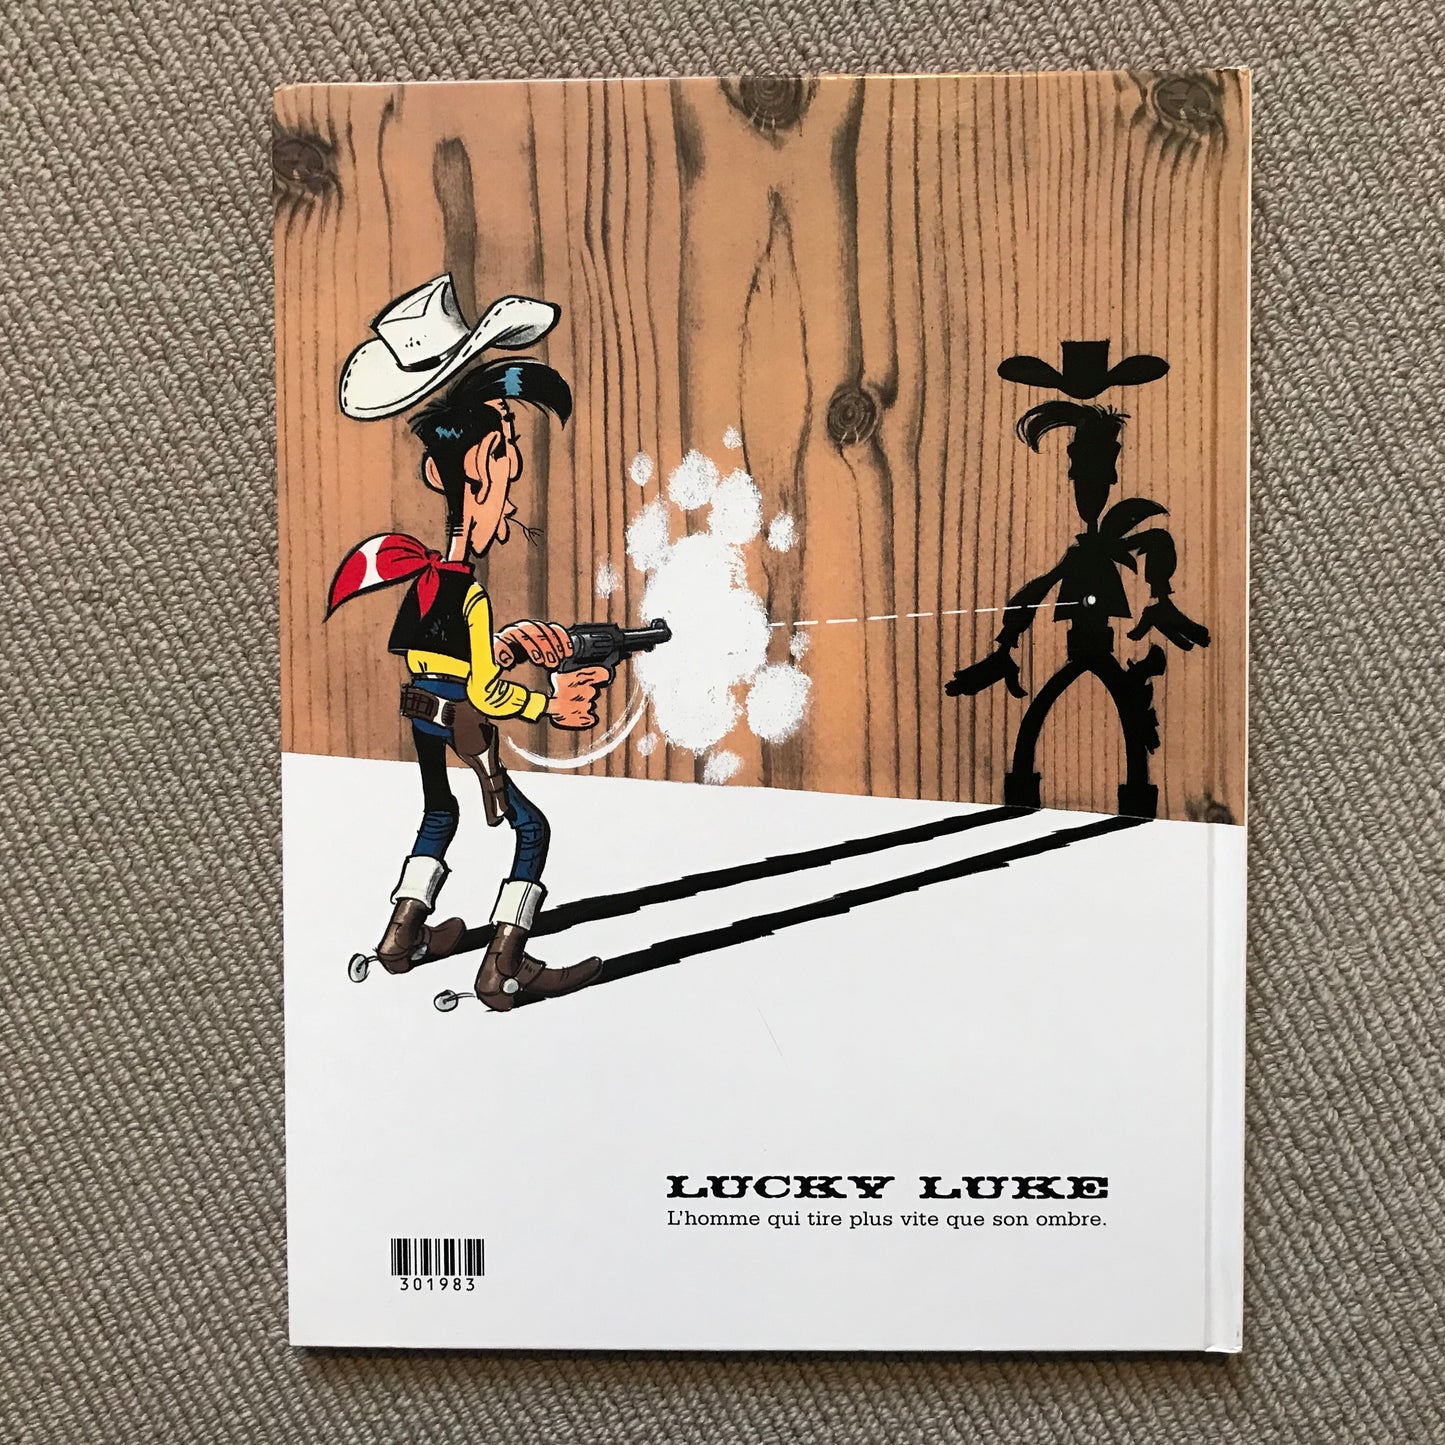 Lucky Luke T59, Le pony express - Morris, Fauche et Léturgie